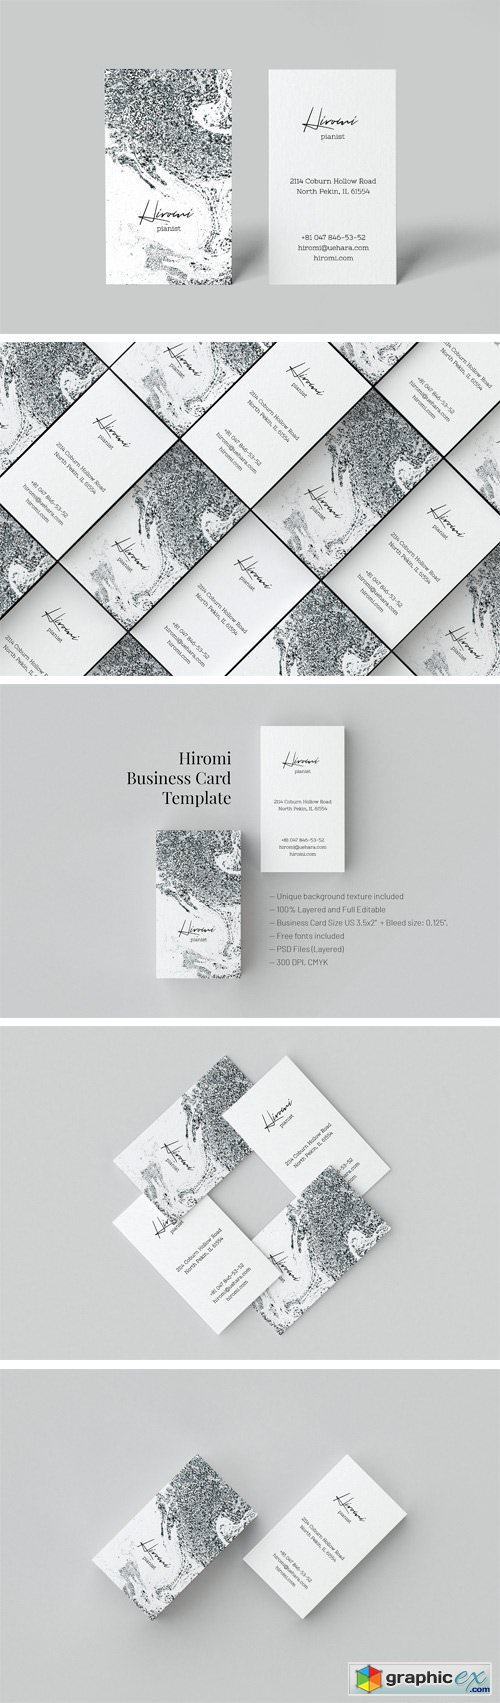 Hiromi. Business Card Template